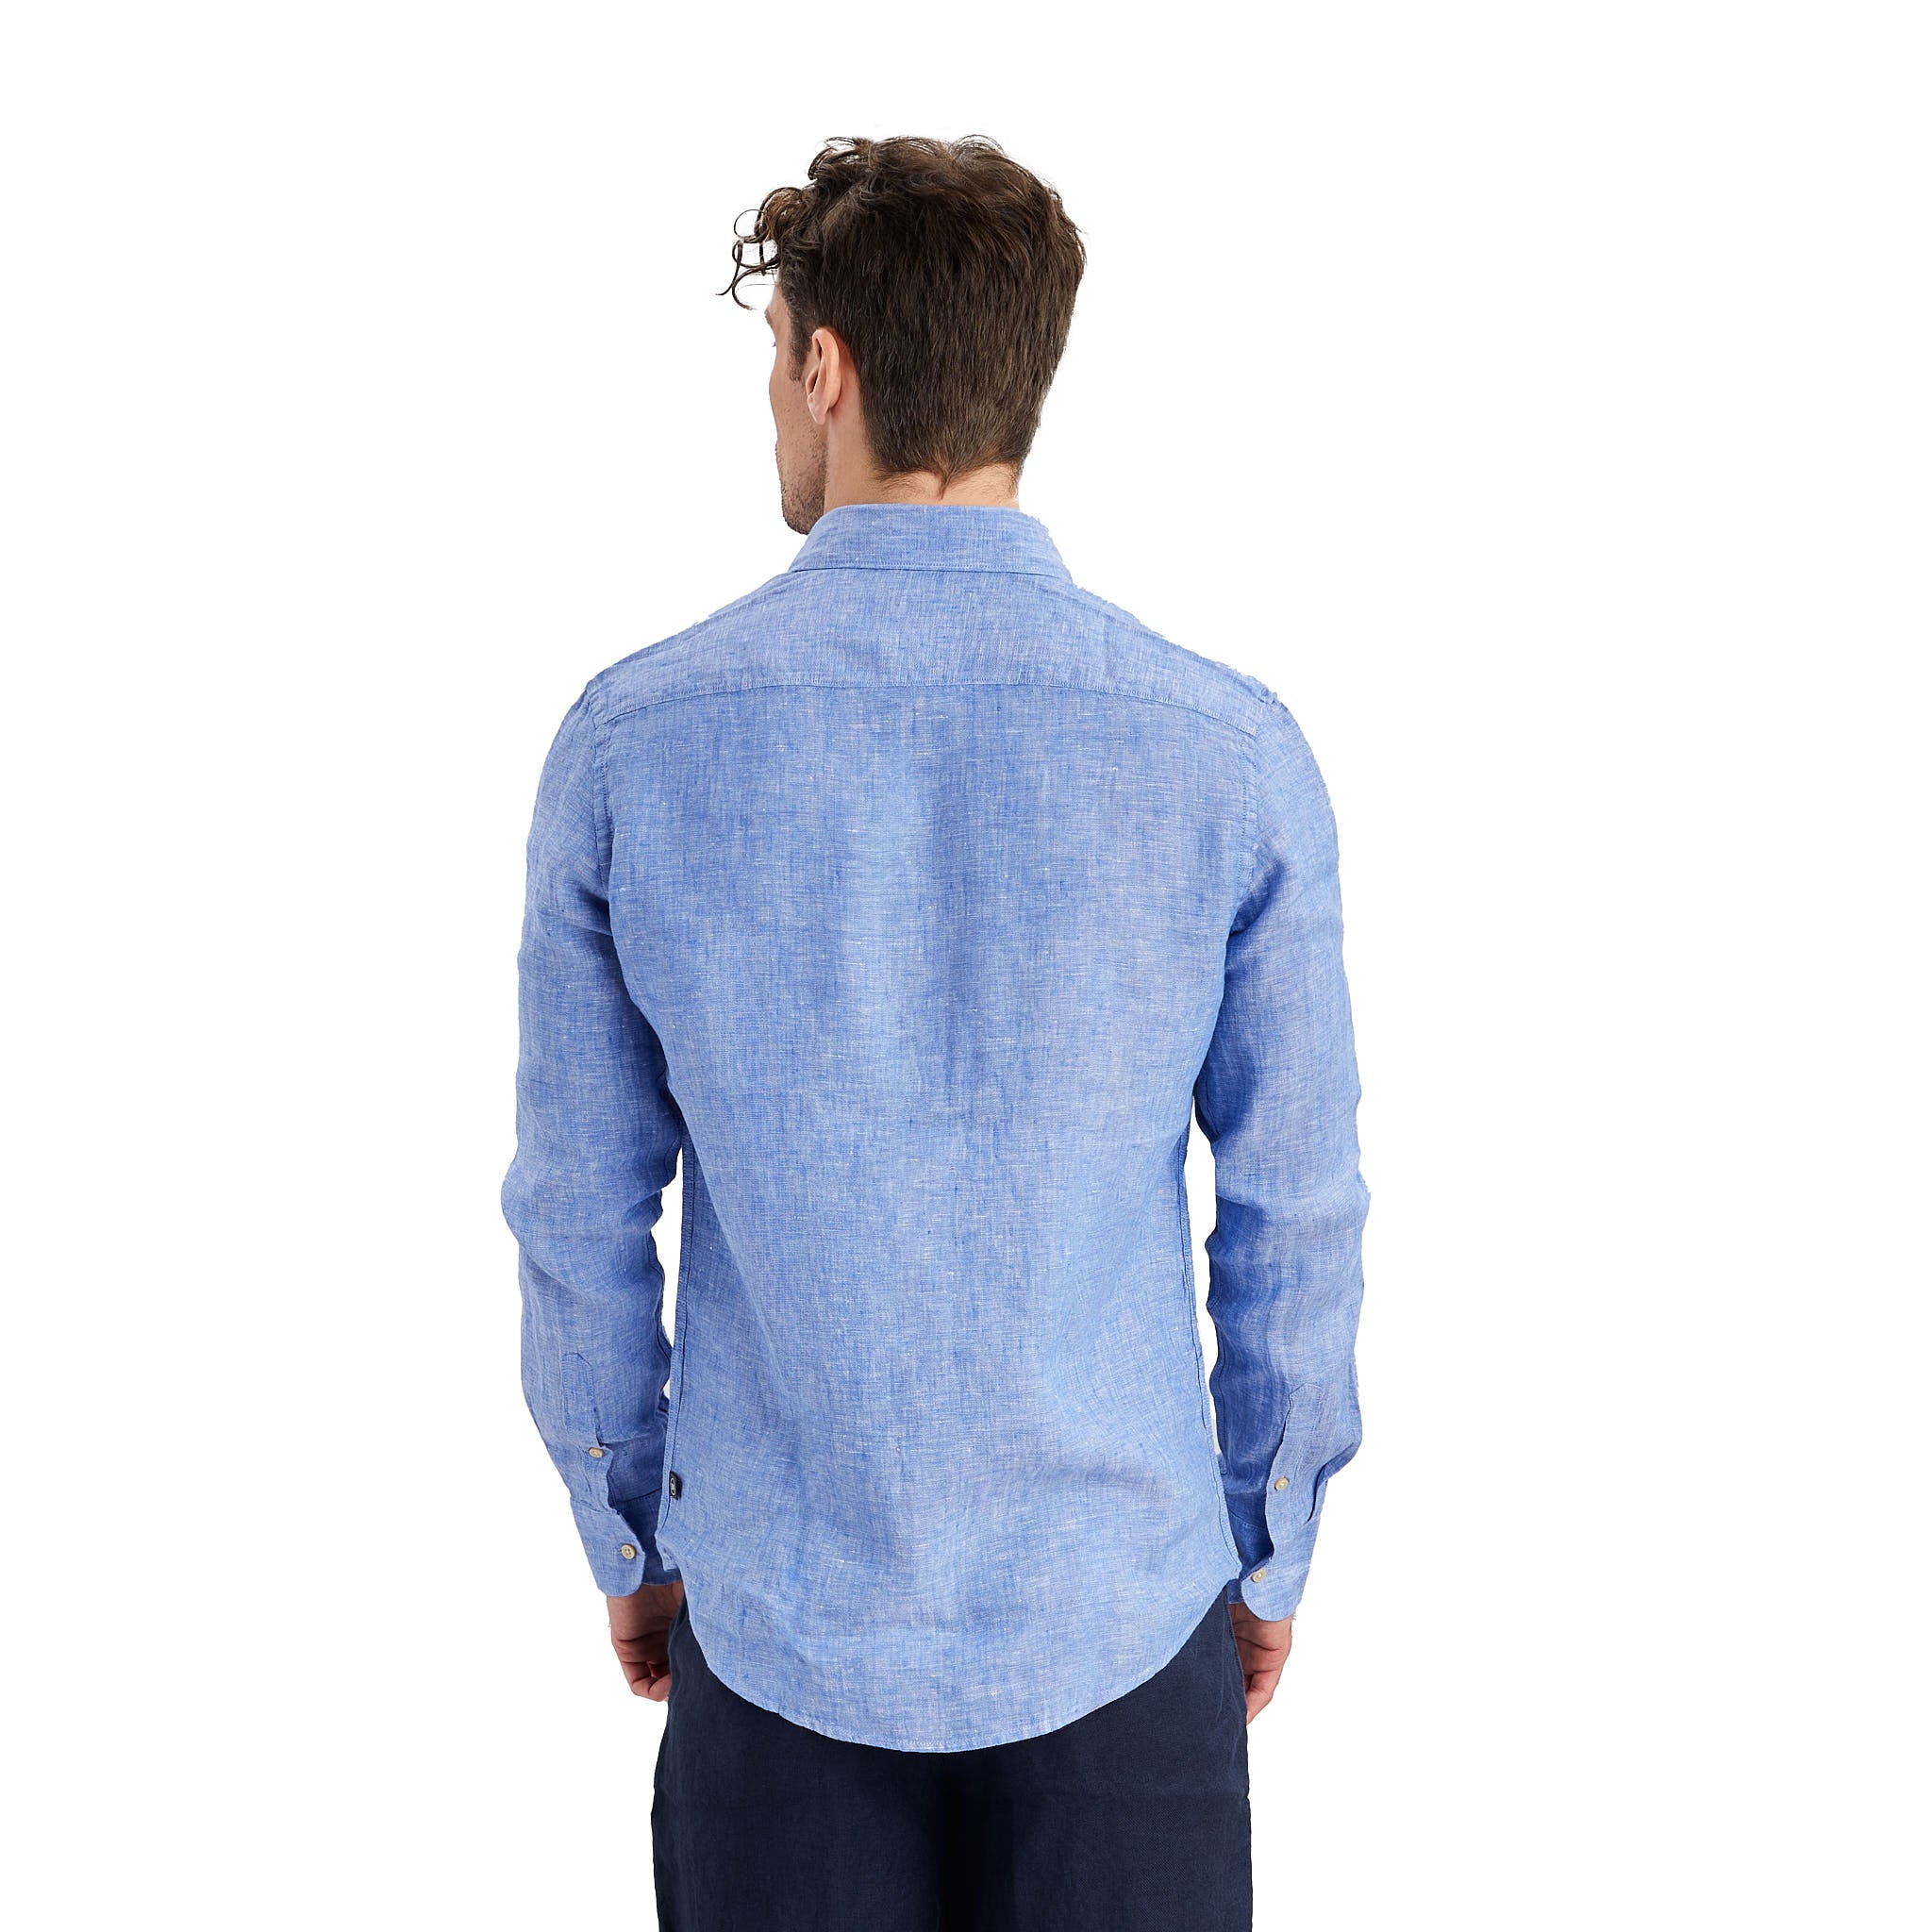 Exklusiv ljusblå linneskjorta i 100% linne med klassisk cutawaykrage.